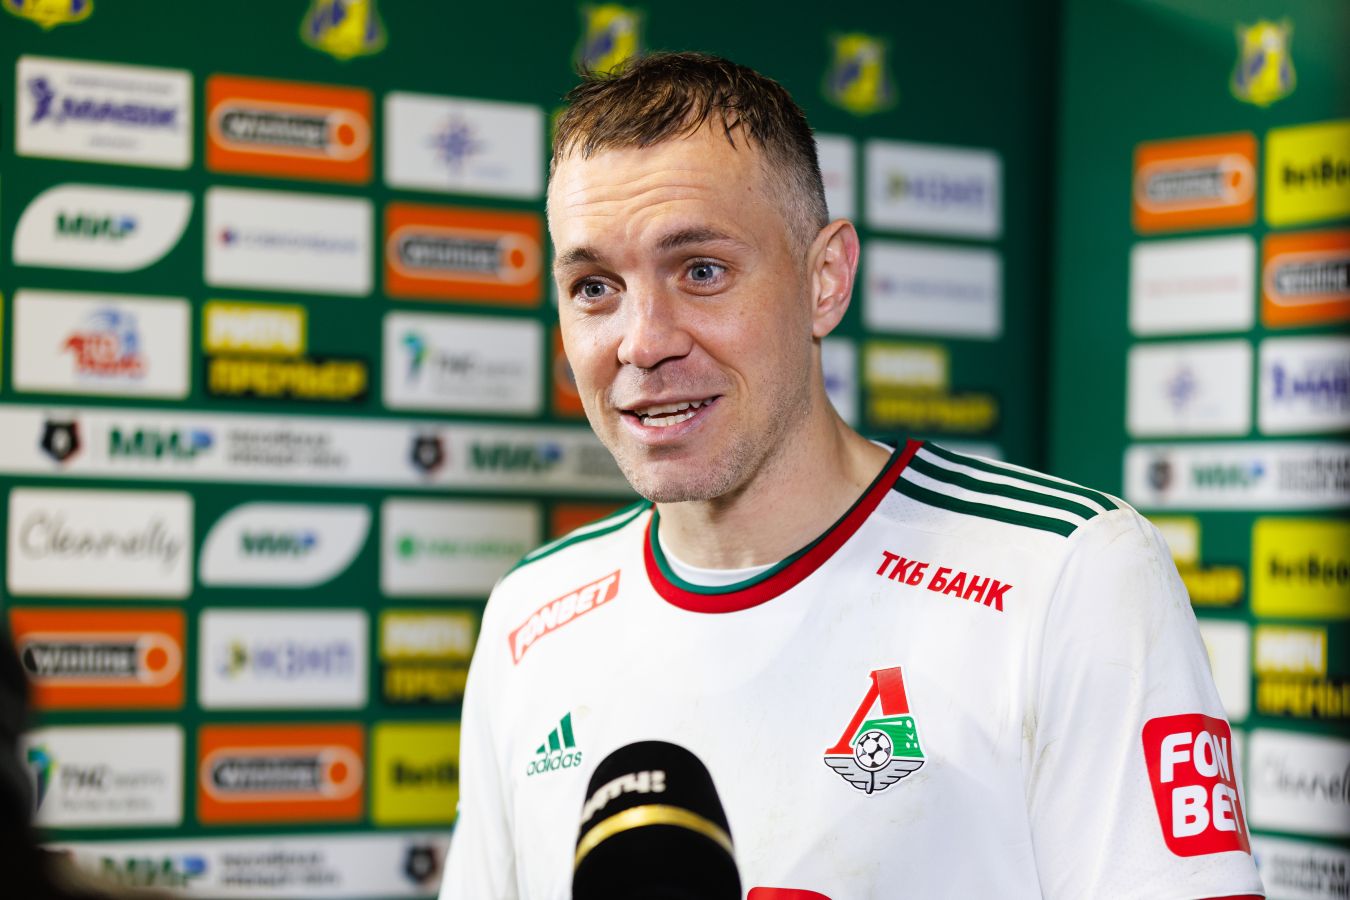 Станислав Черчесов оценил игру Артёма Дзюбы за «Локомотив»